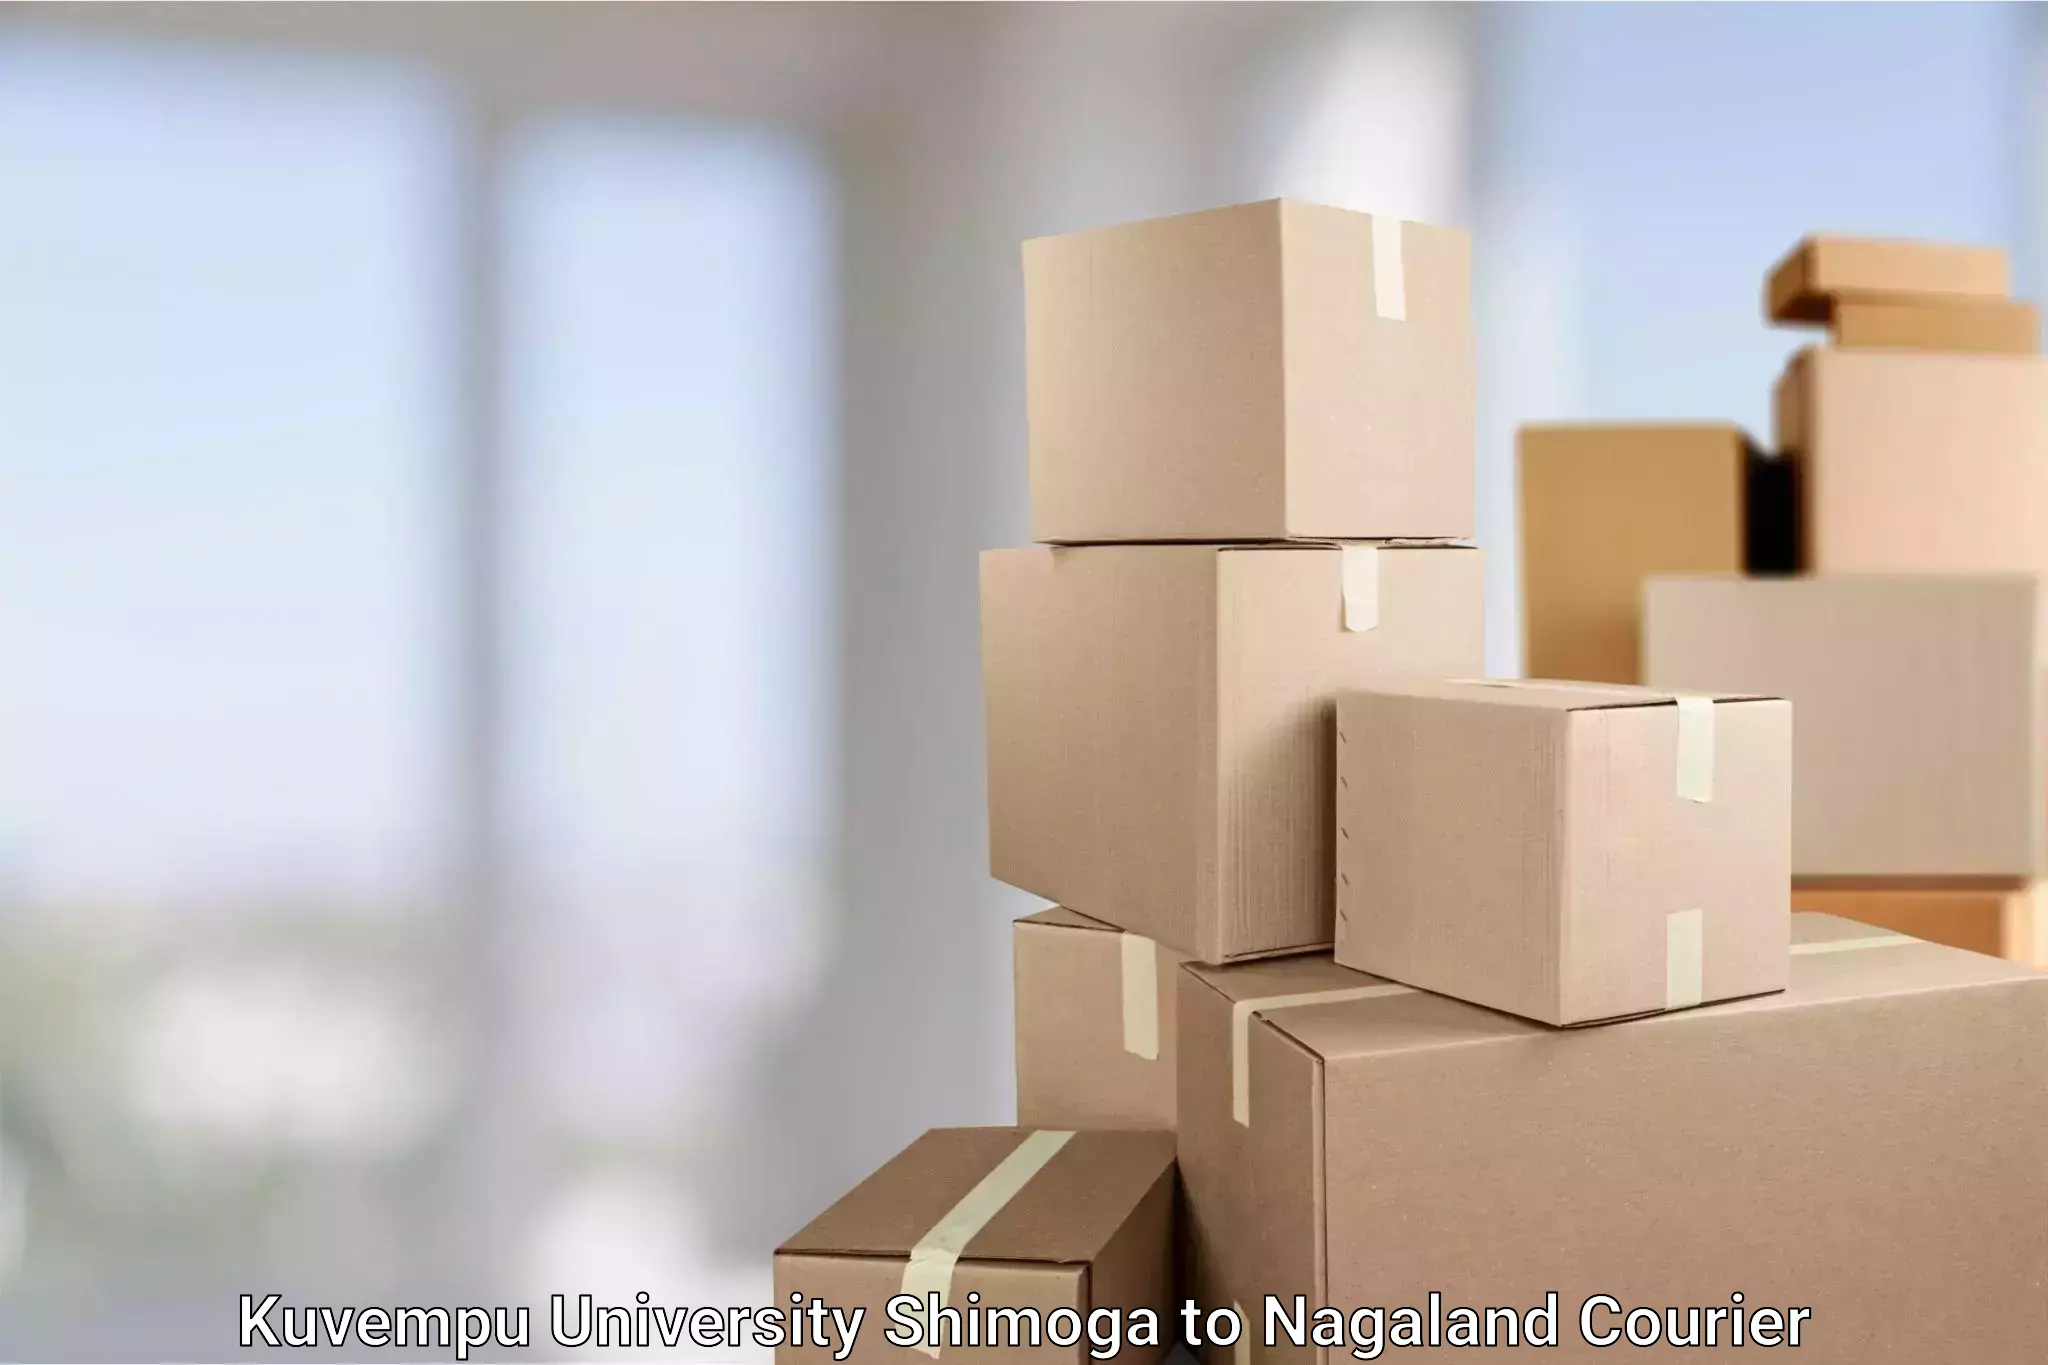 Urgent courier needs Kuvempu University Shimoga to NIT Nagaland